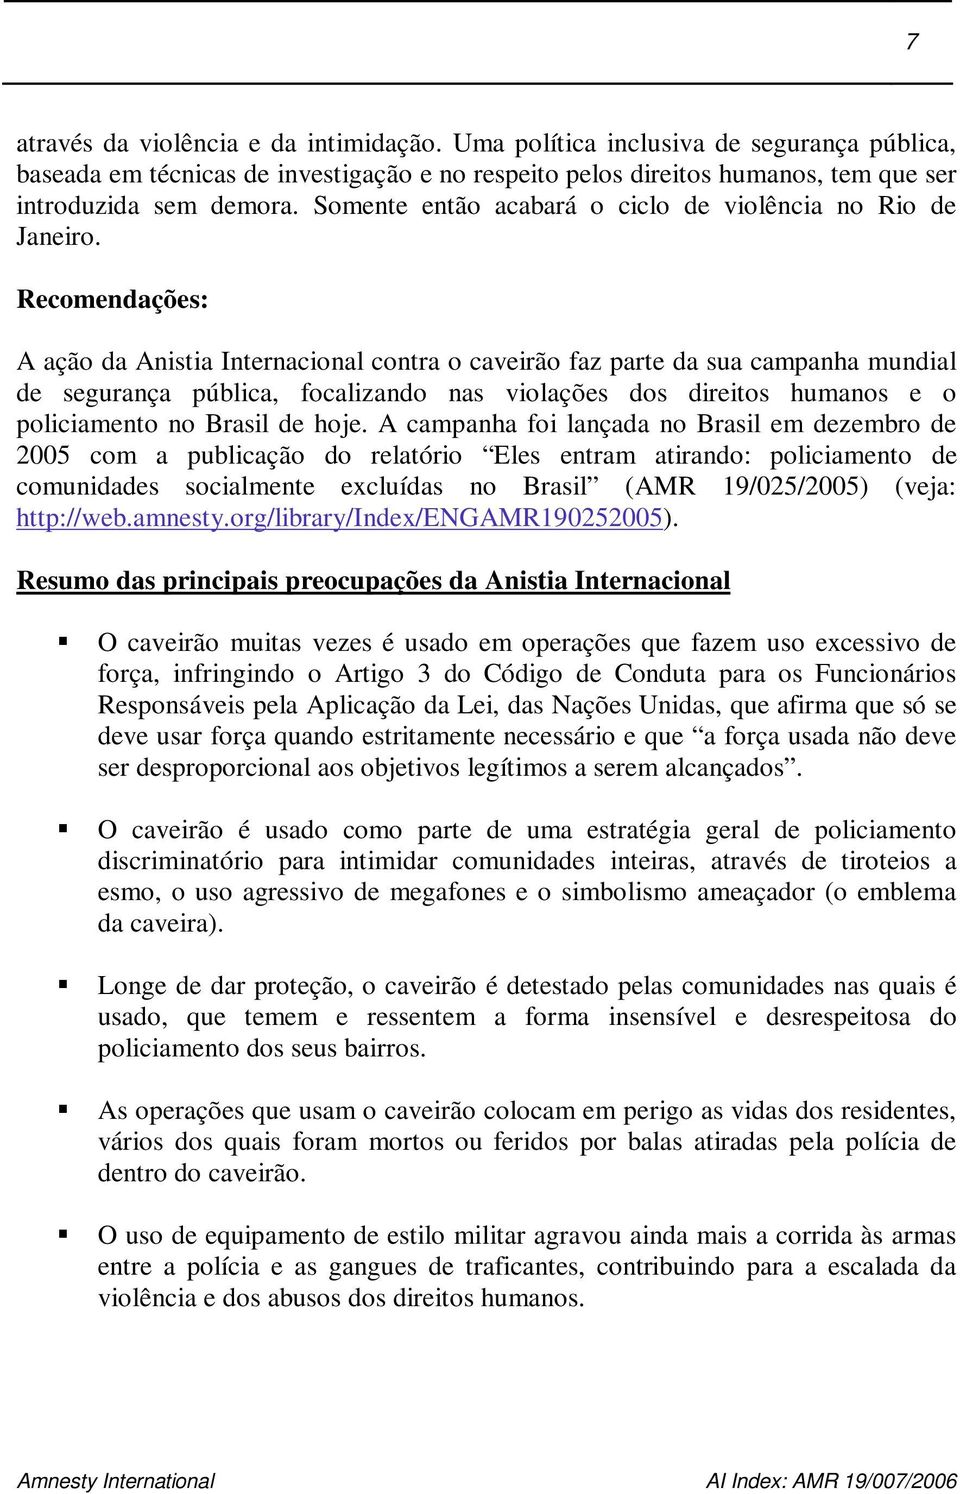 Recomendações: A ação da Anistia Internacional contra o caveirão faz parte da sua campanha mundial de segurança pública, focalizando nas violações dos direitos humanos e o policiamento no Brasil de